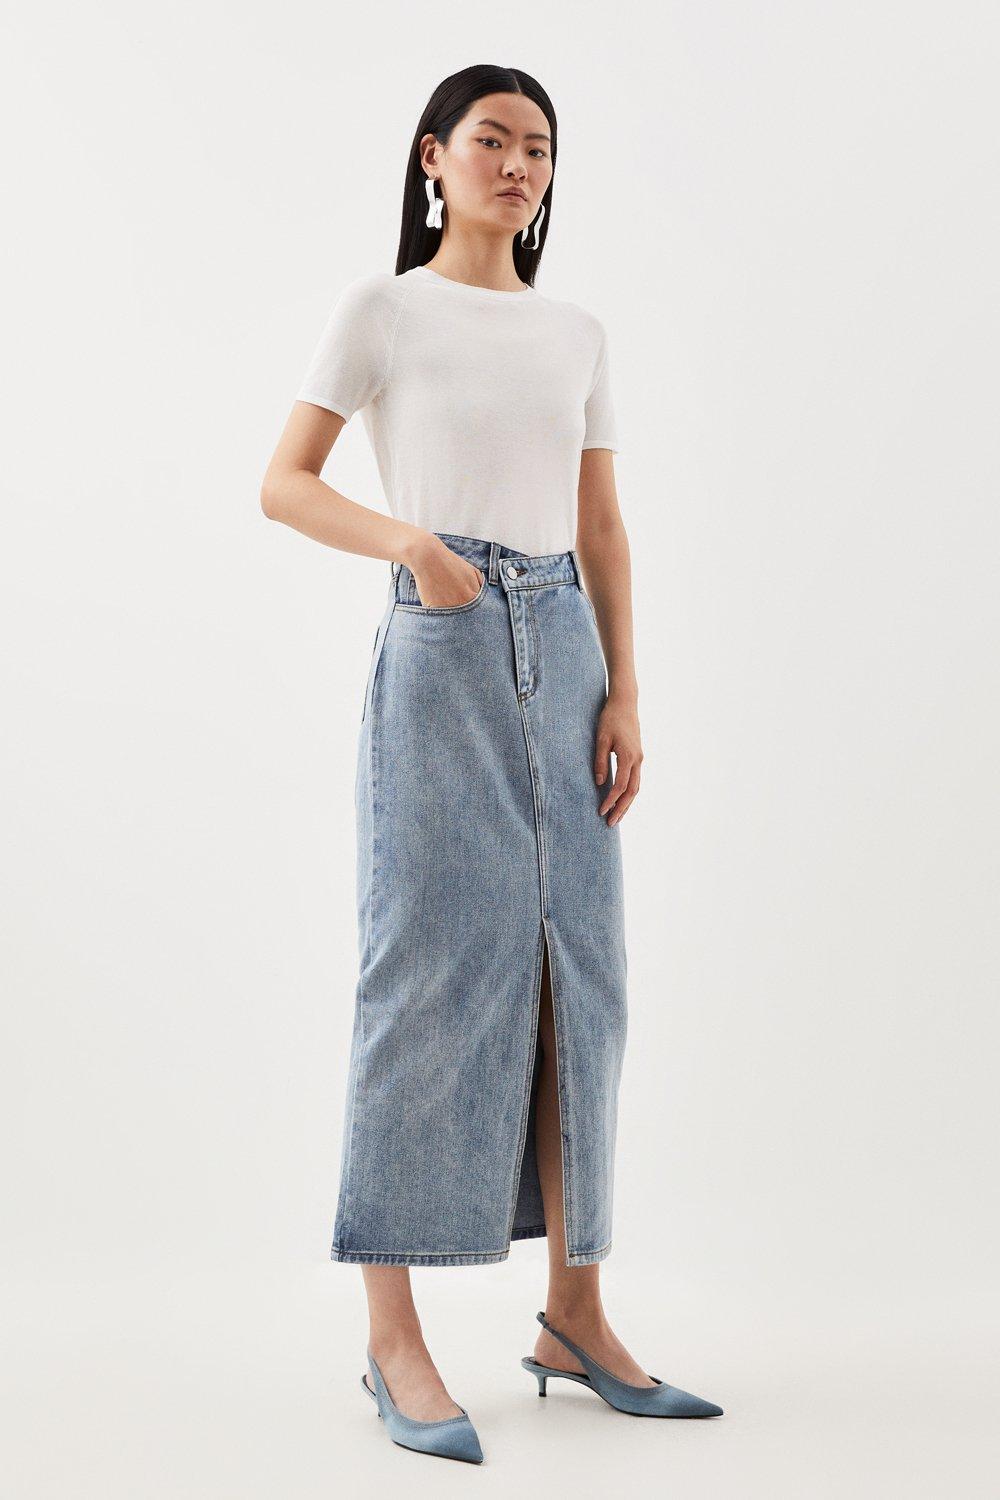 gifteabox - Via Vintage Faded Y2K A-Line Front Split Denim Long Skirt -  Codibook.